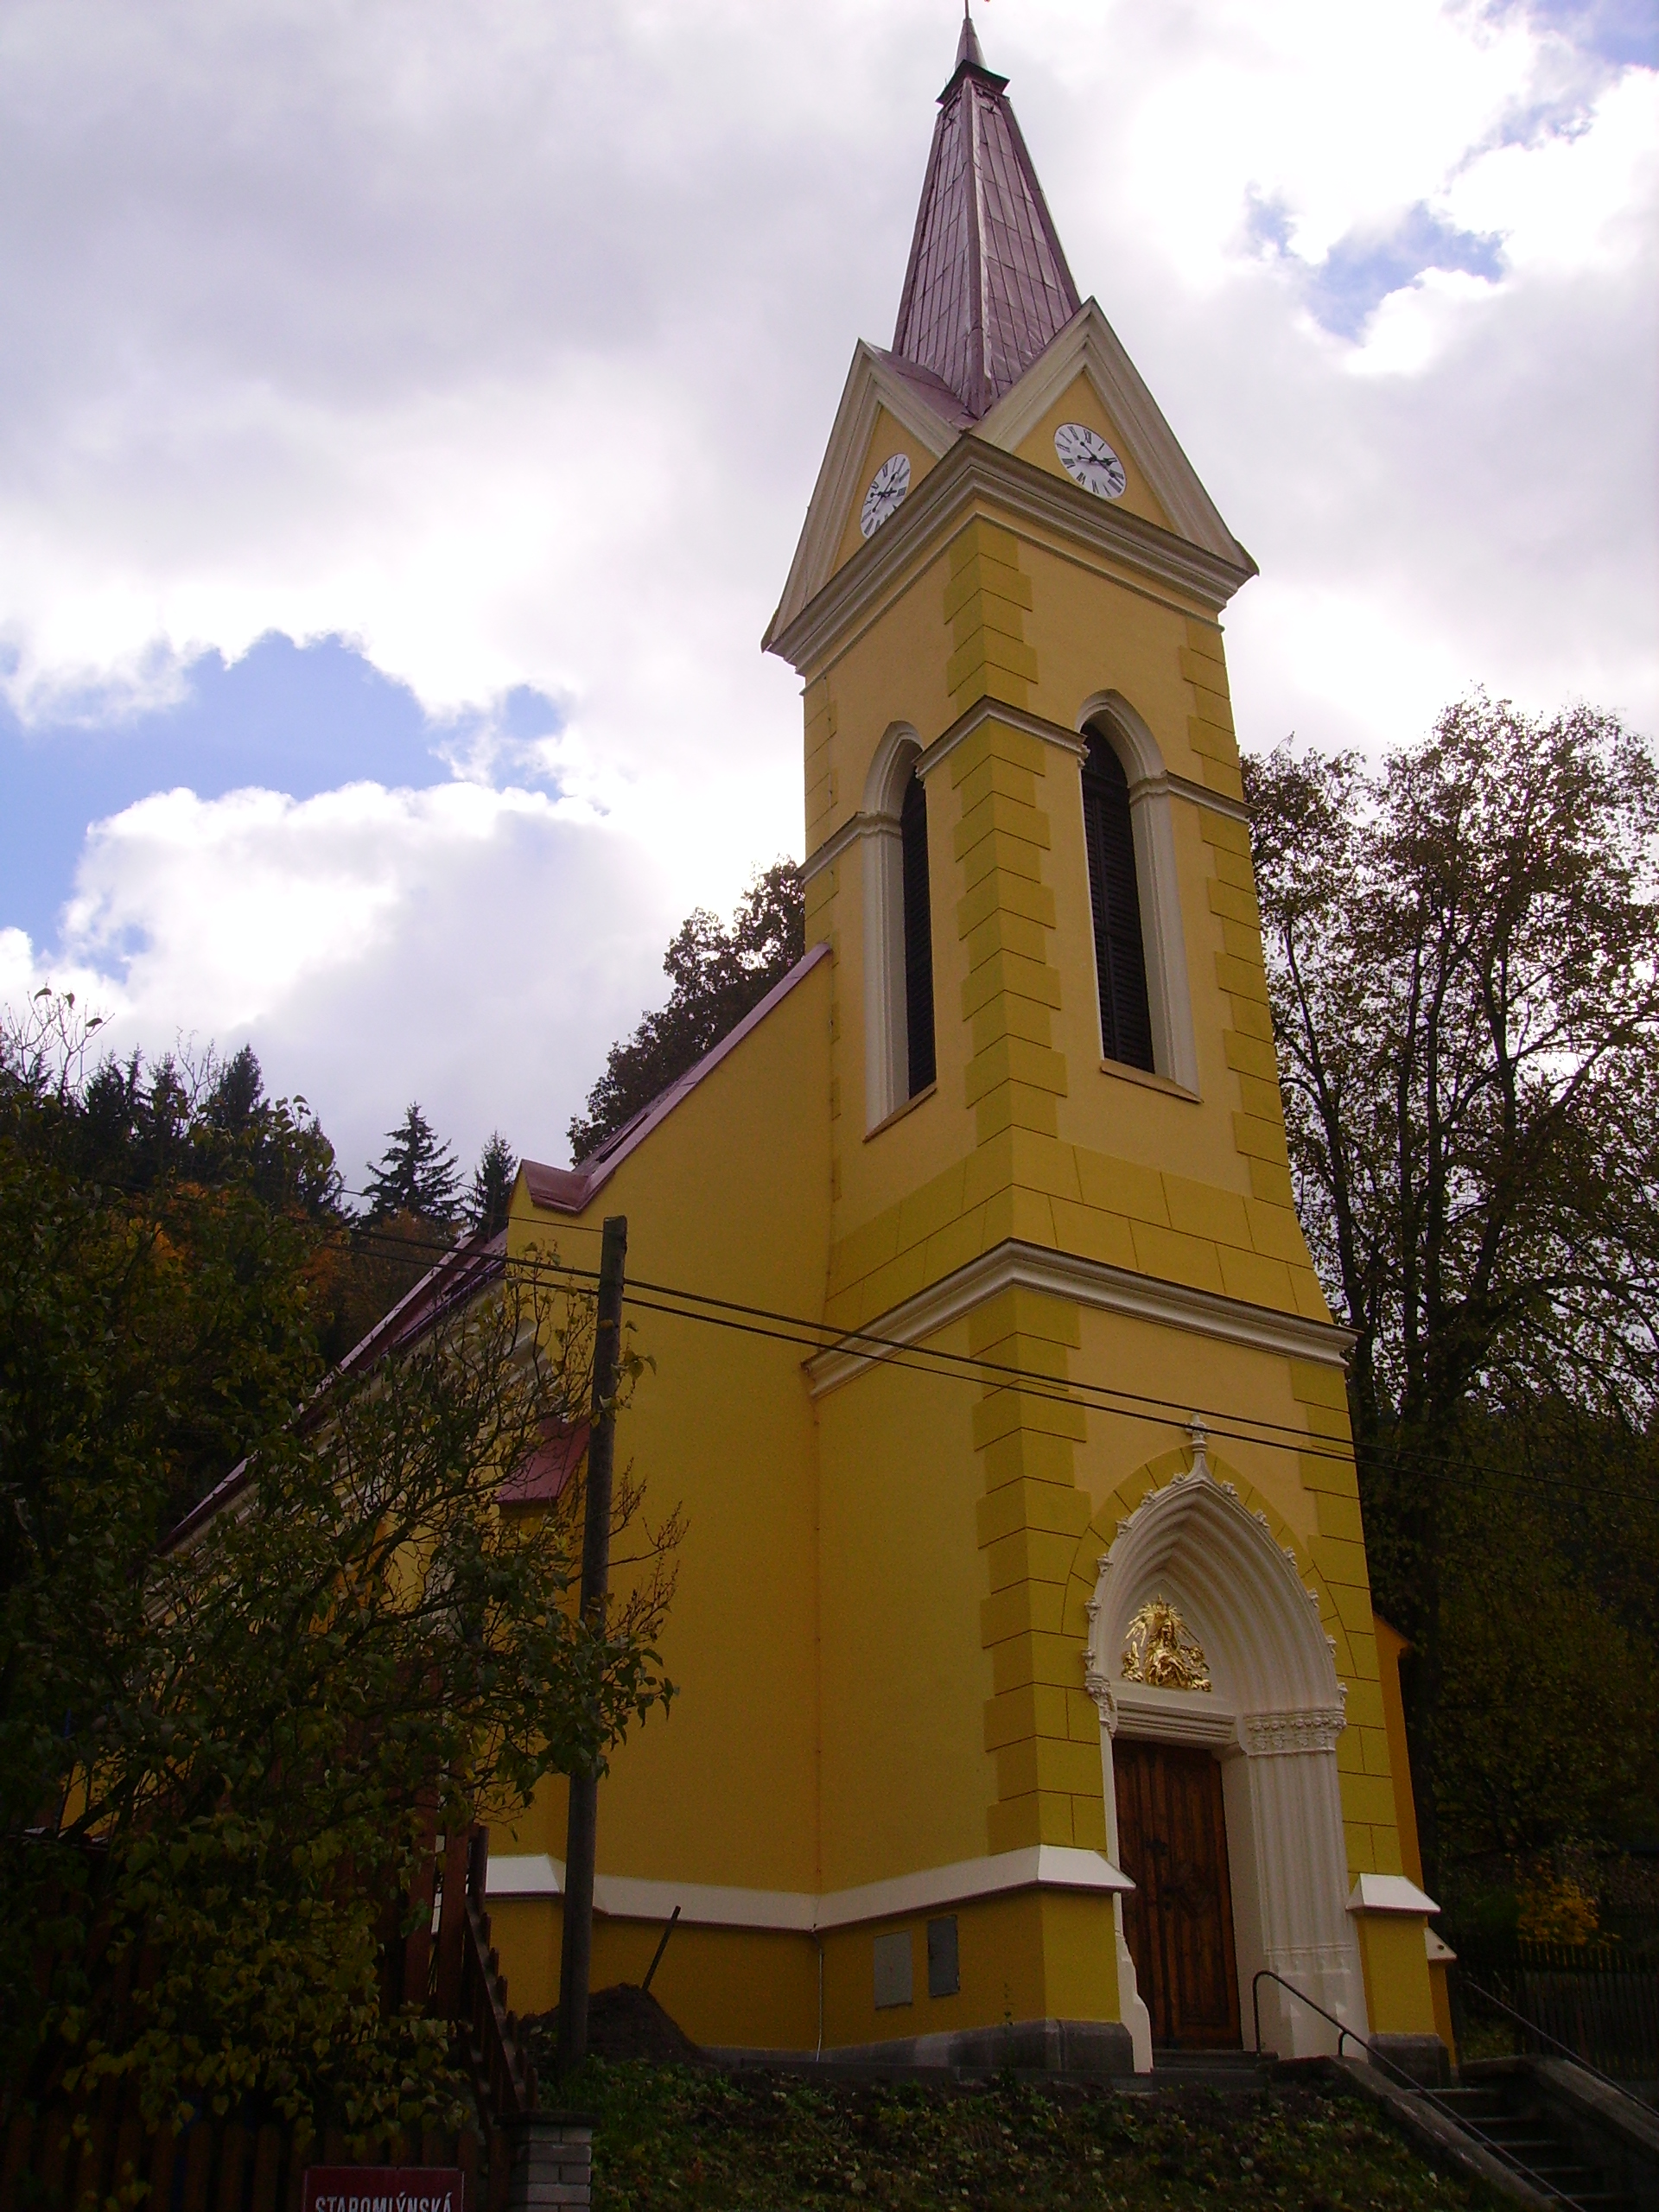 marienkirche